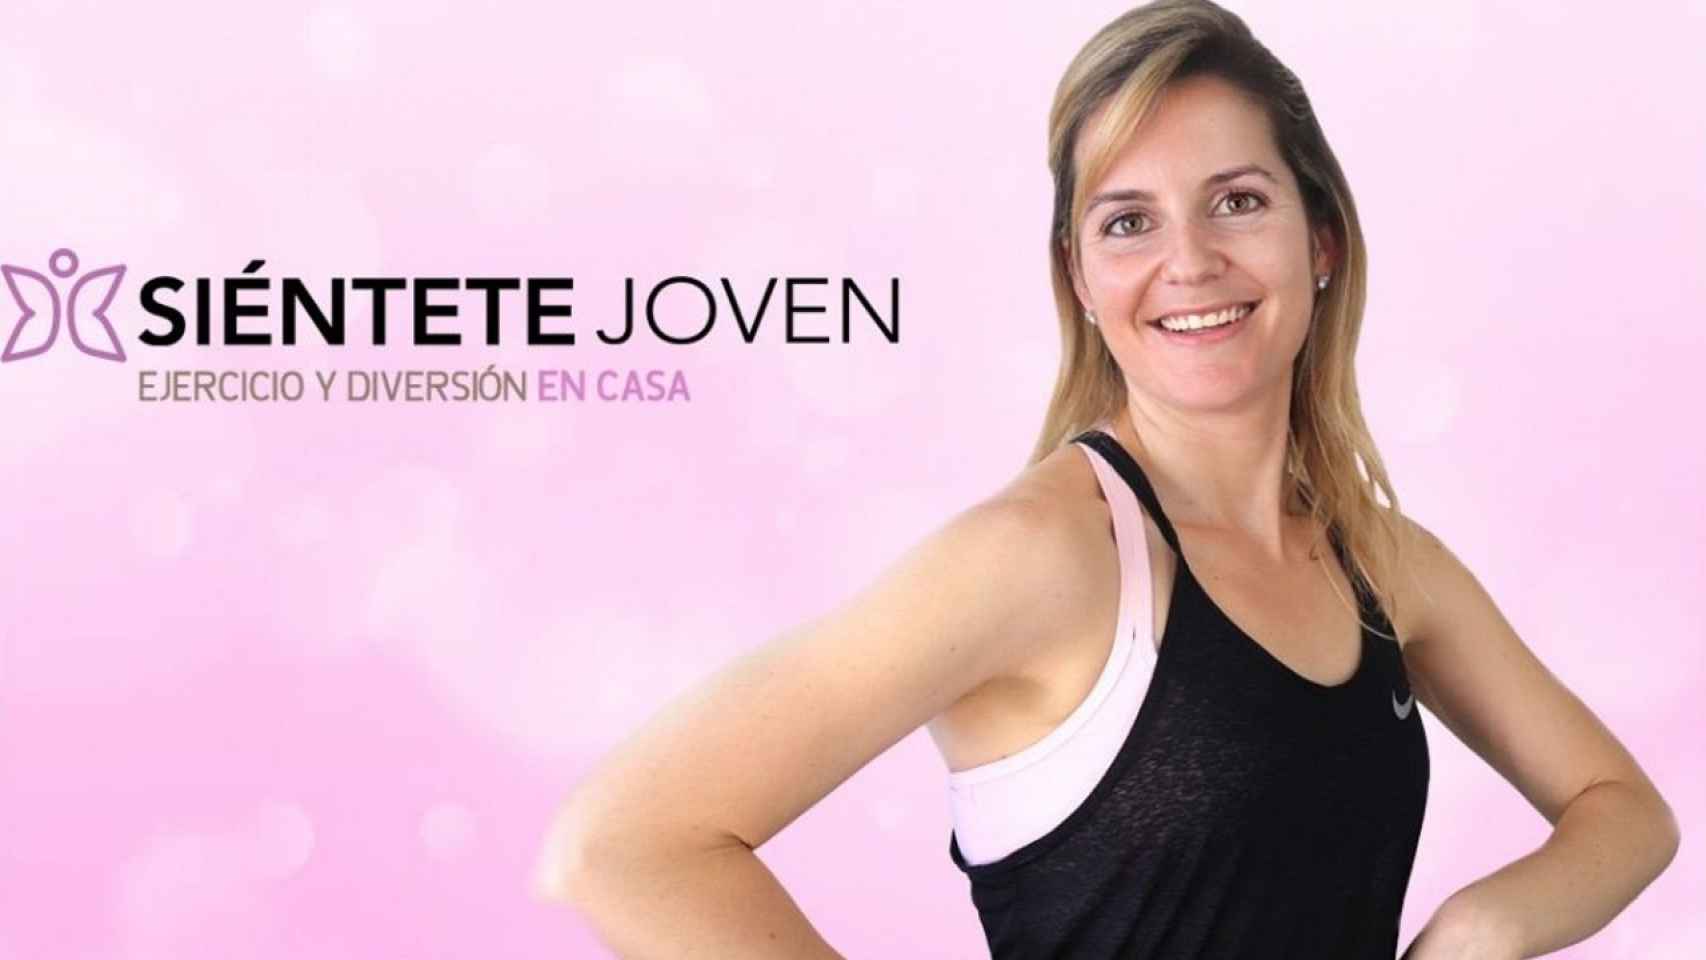 María Martínez, youtuber del canal Sientete Joven.